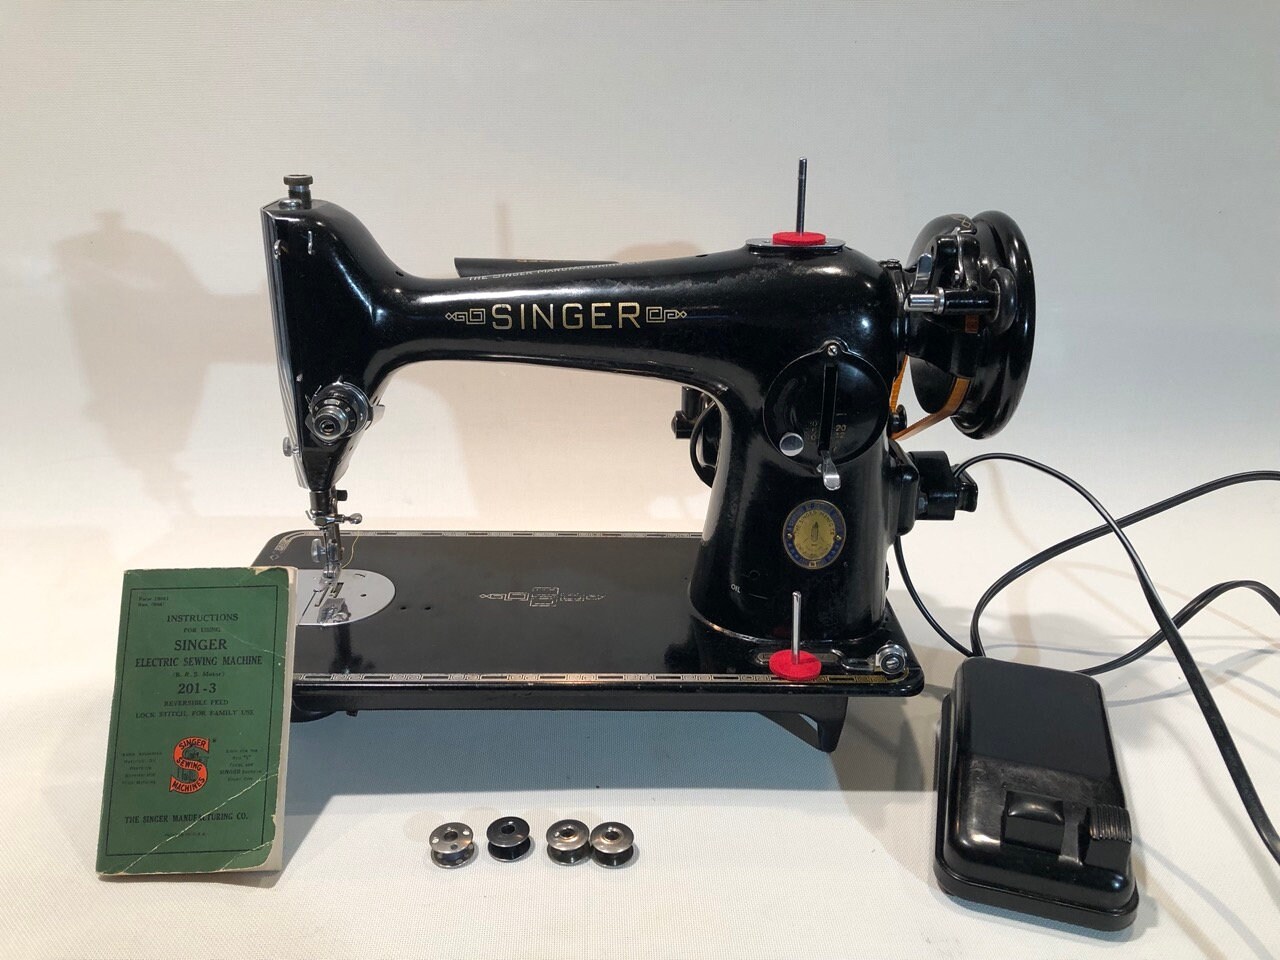 Singer 29K Sewing Machine Type 29 X 4 Needles Size 23 